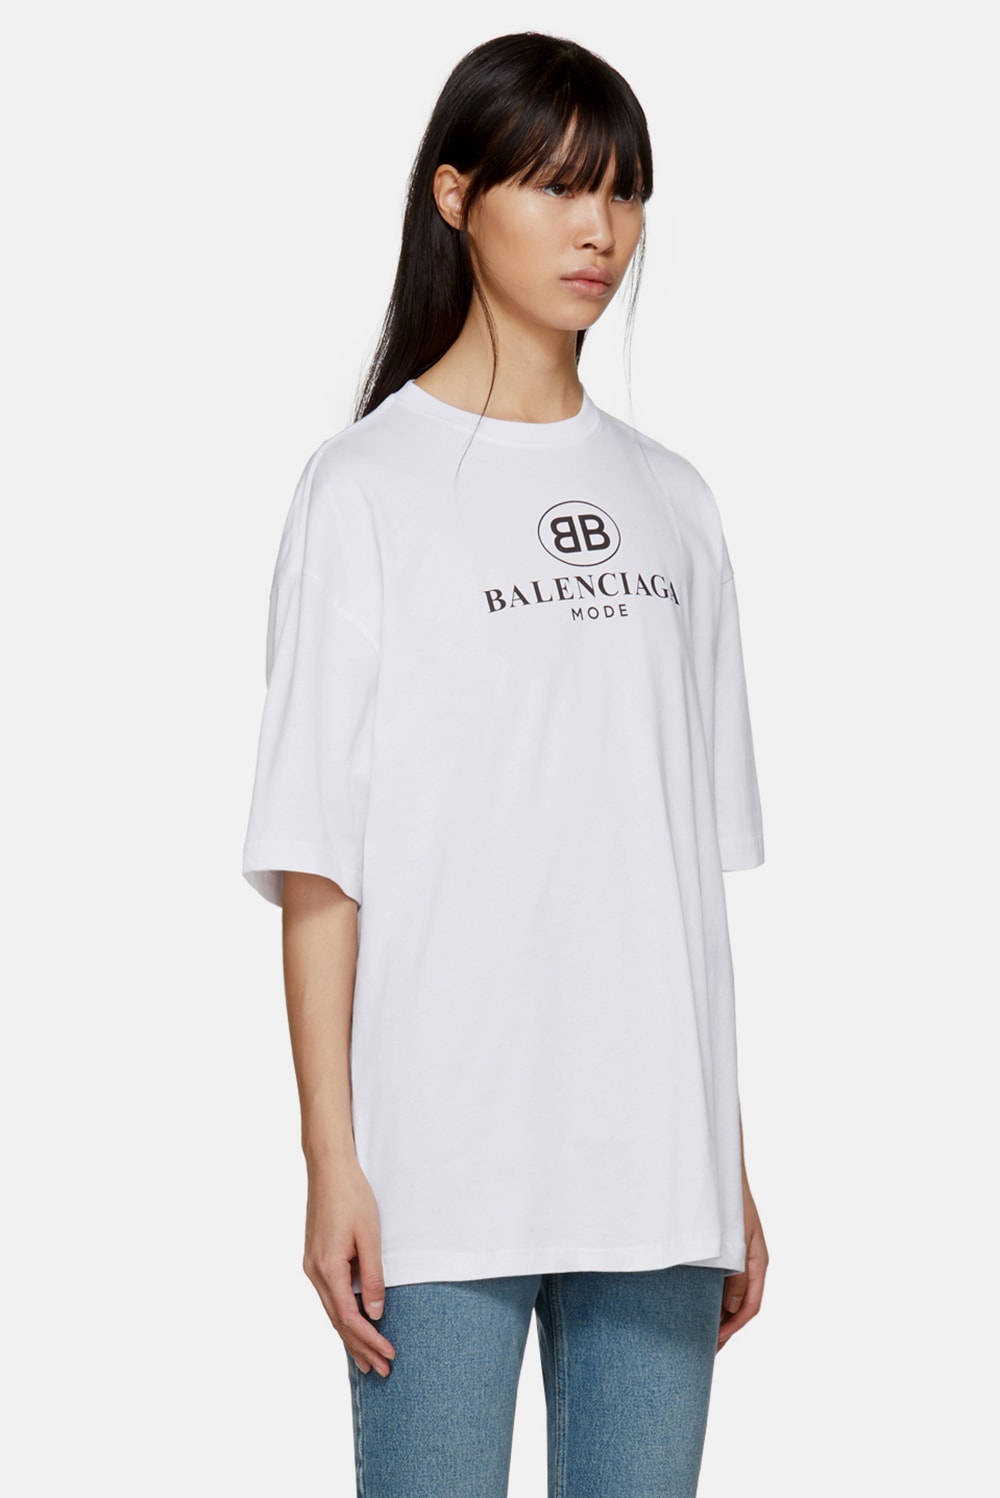 발렌시아가 BB 로고 티셔츠 뎀나 즈바살리아 2017 balenciaga mode logo t-shirts demna gvasalia